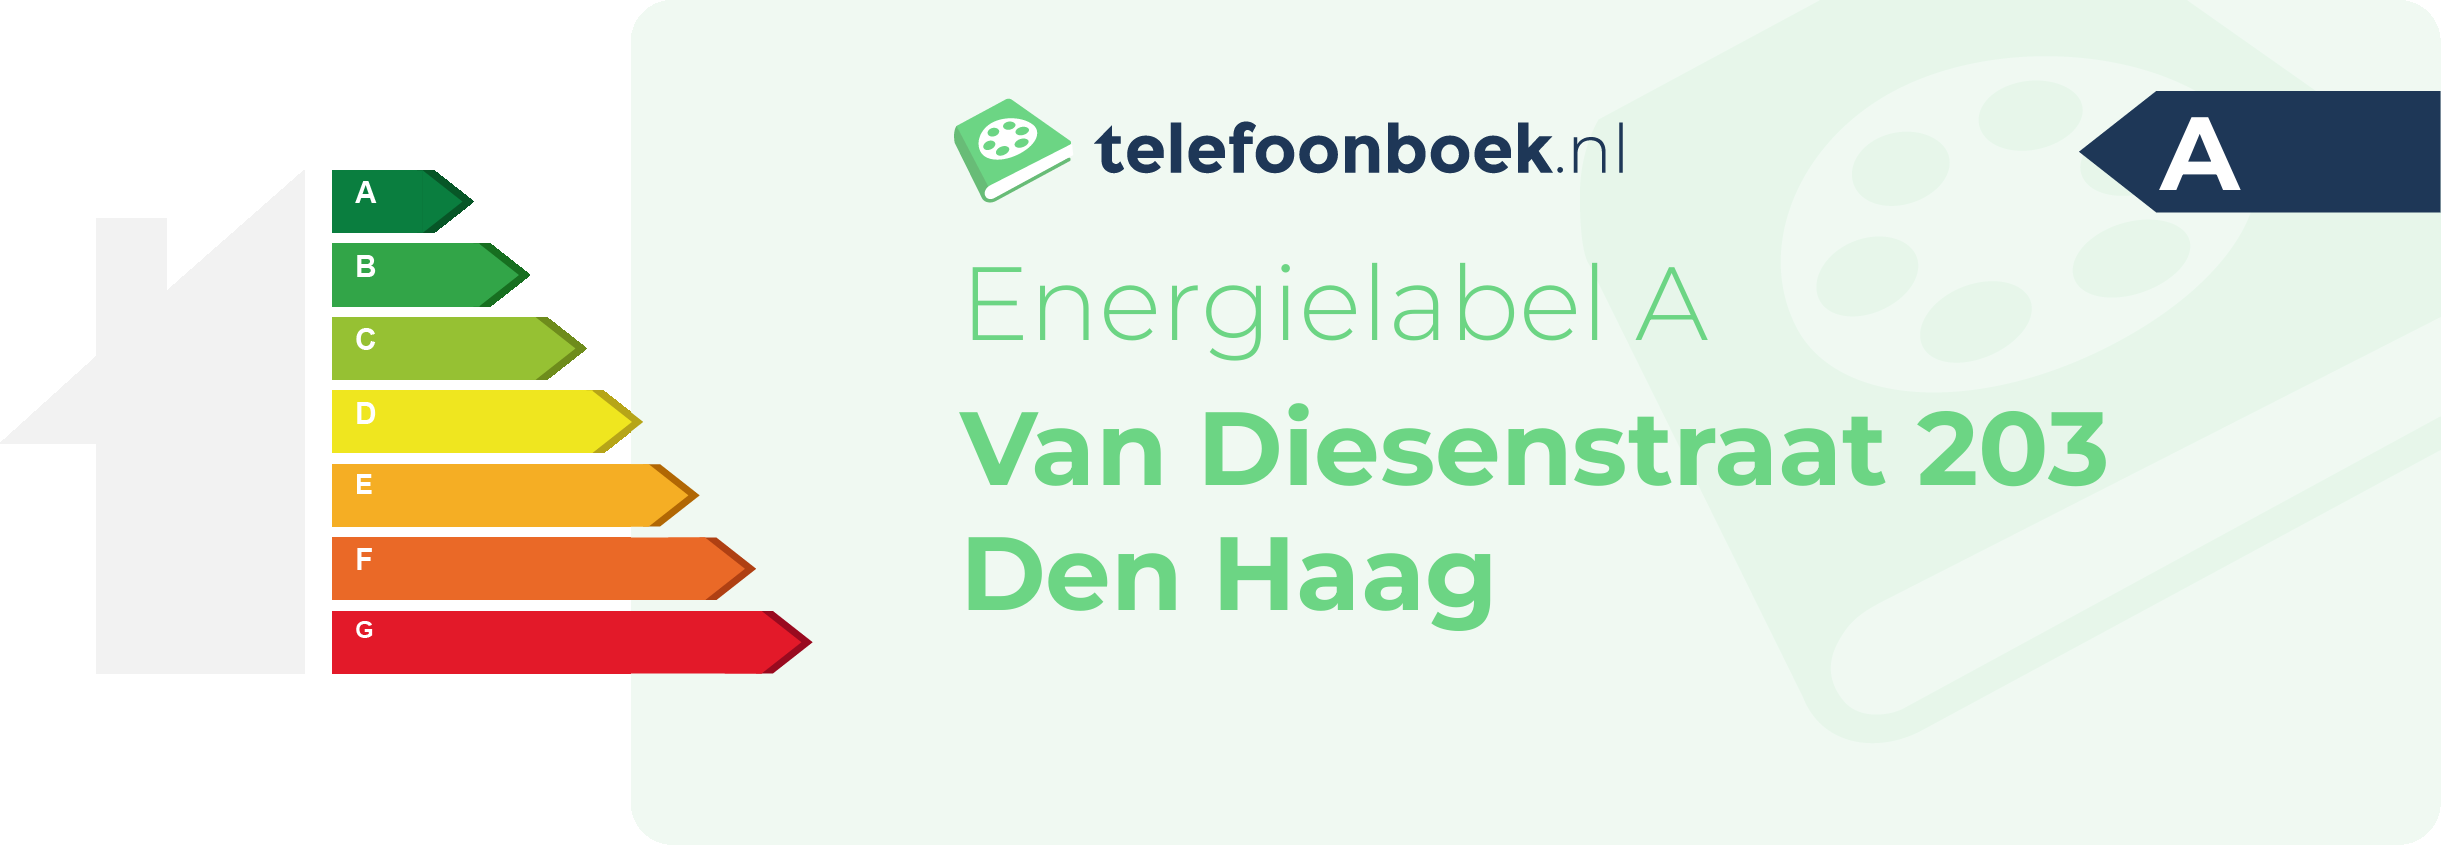 Energielabel Van Diesenstraat 203 Den Haag